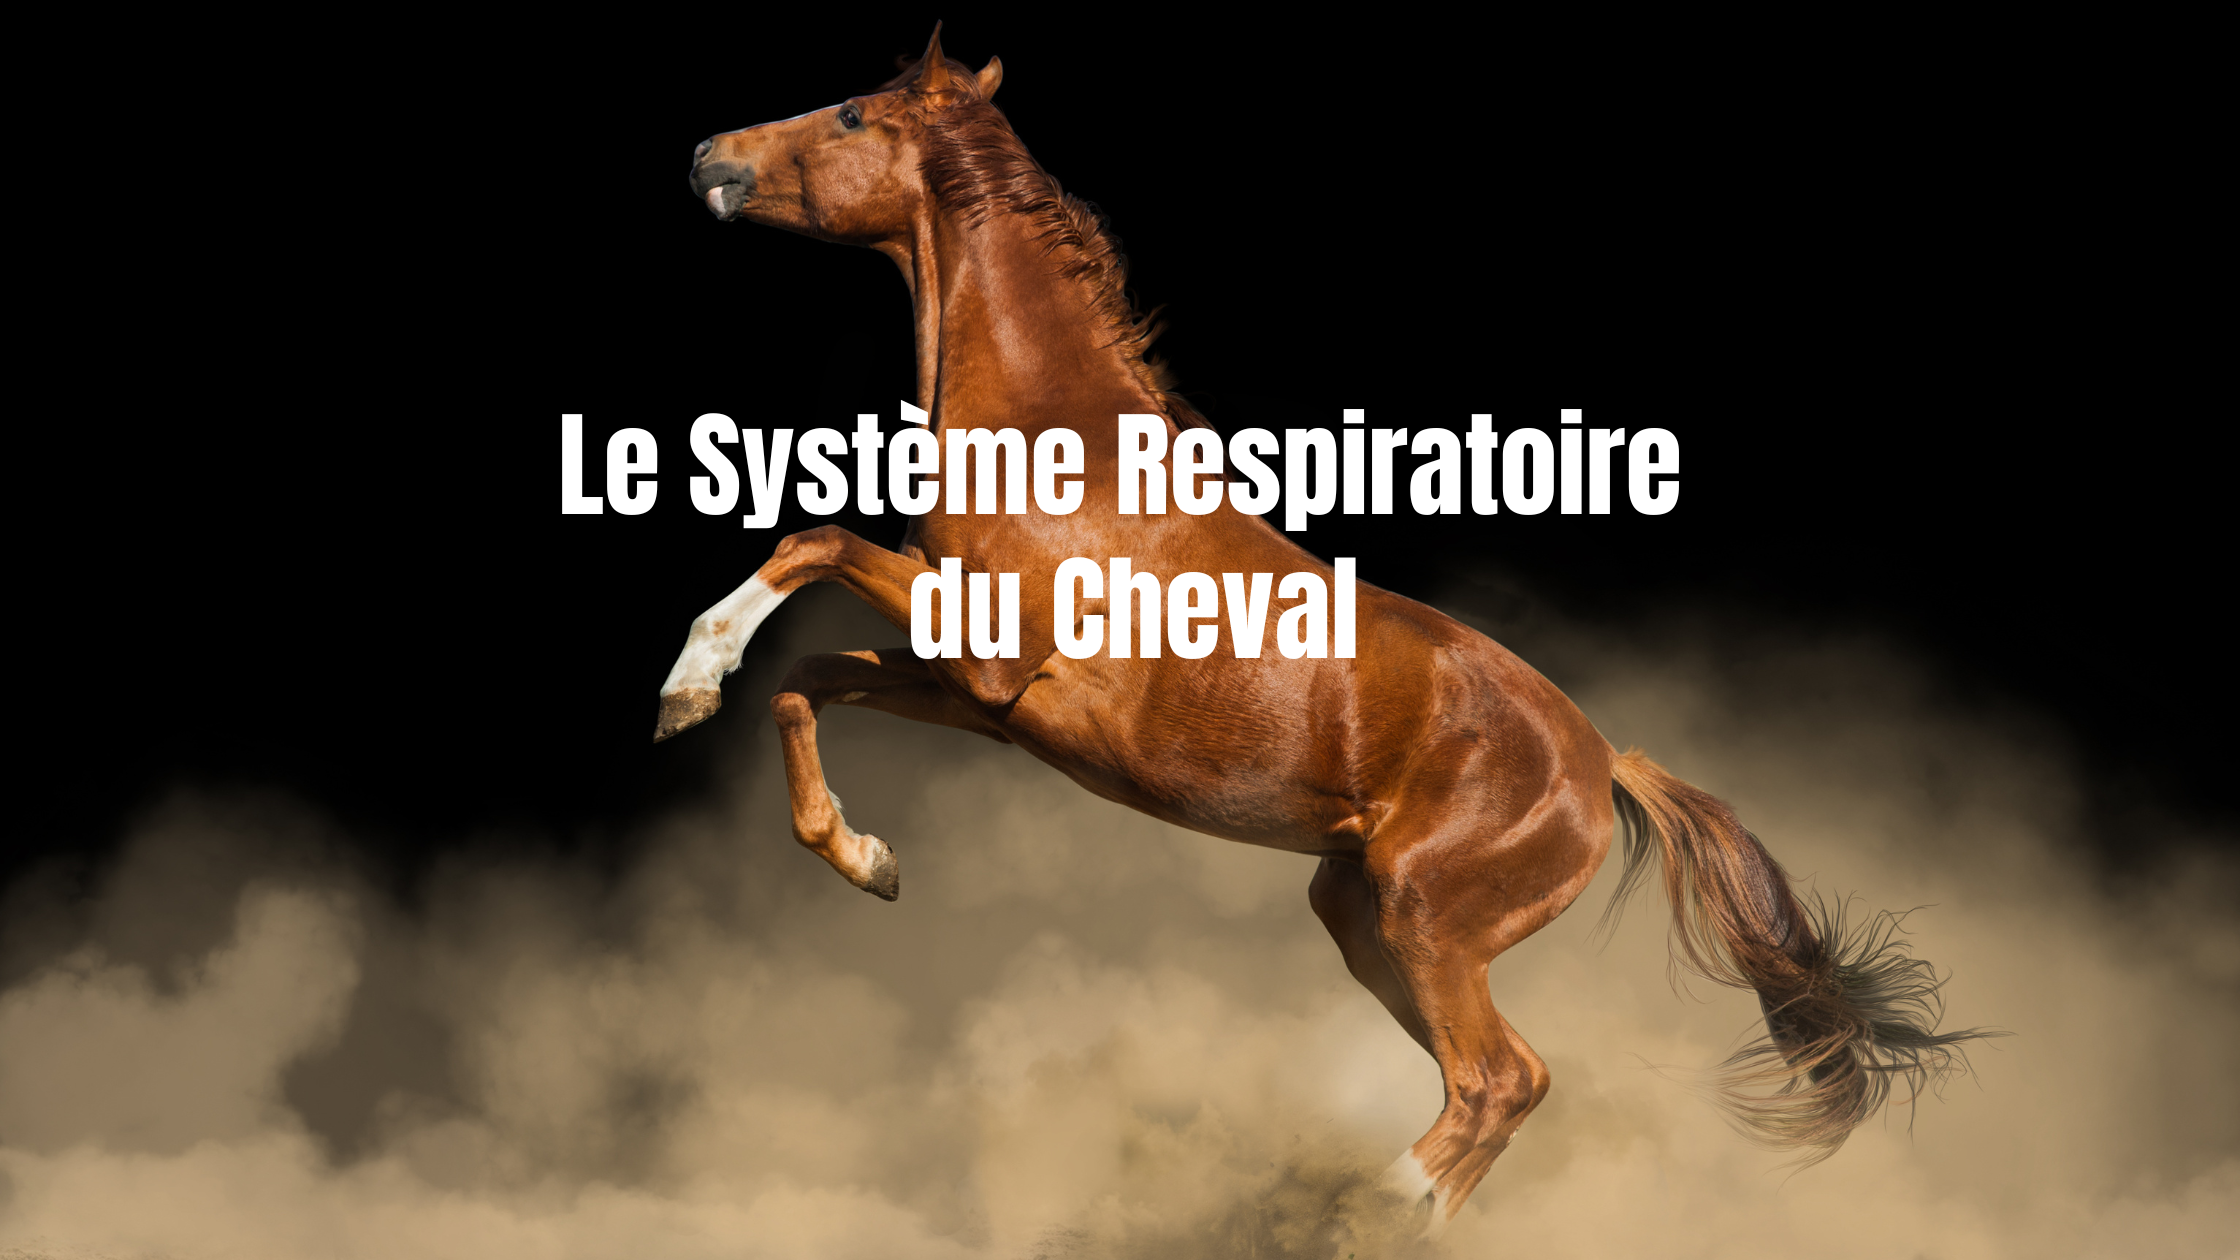 Lire la suite à propos de l’article Le système respiratoire du cheval : emphysème, poumons